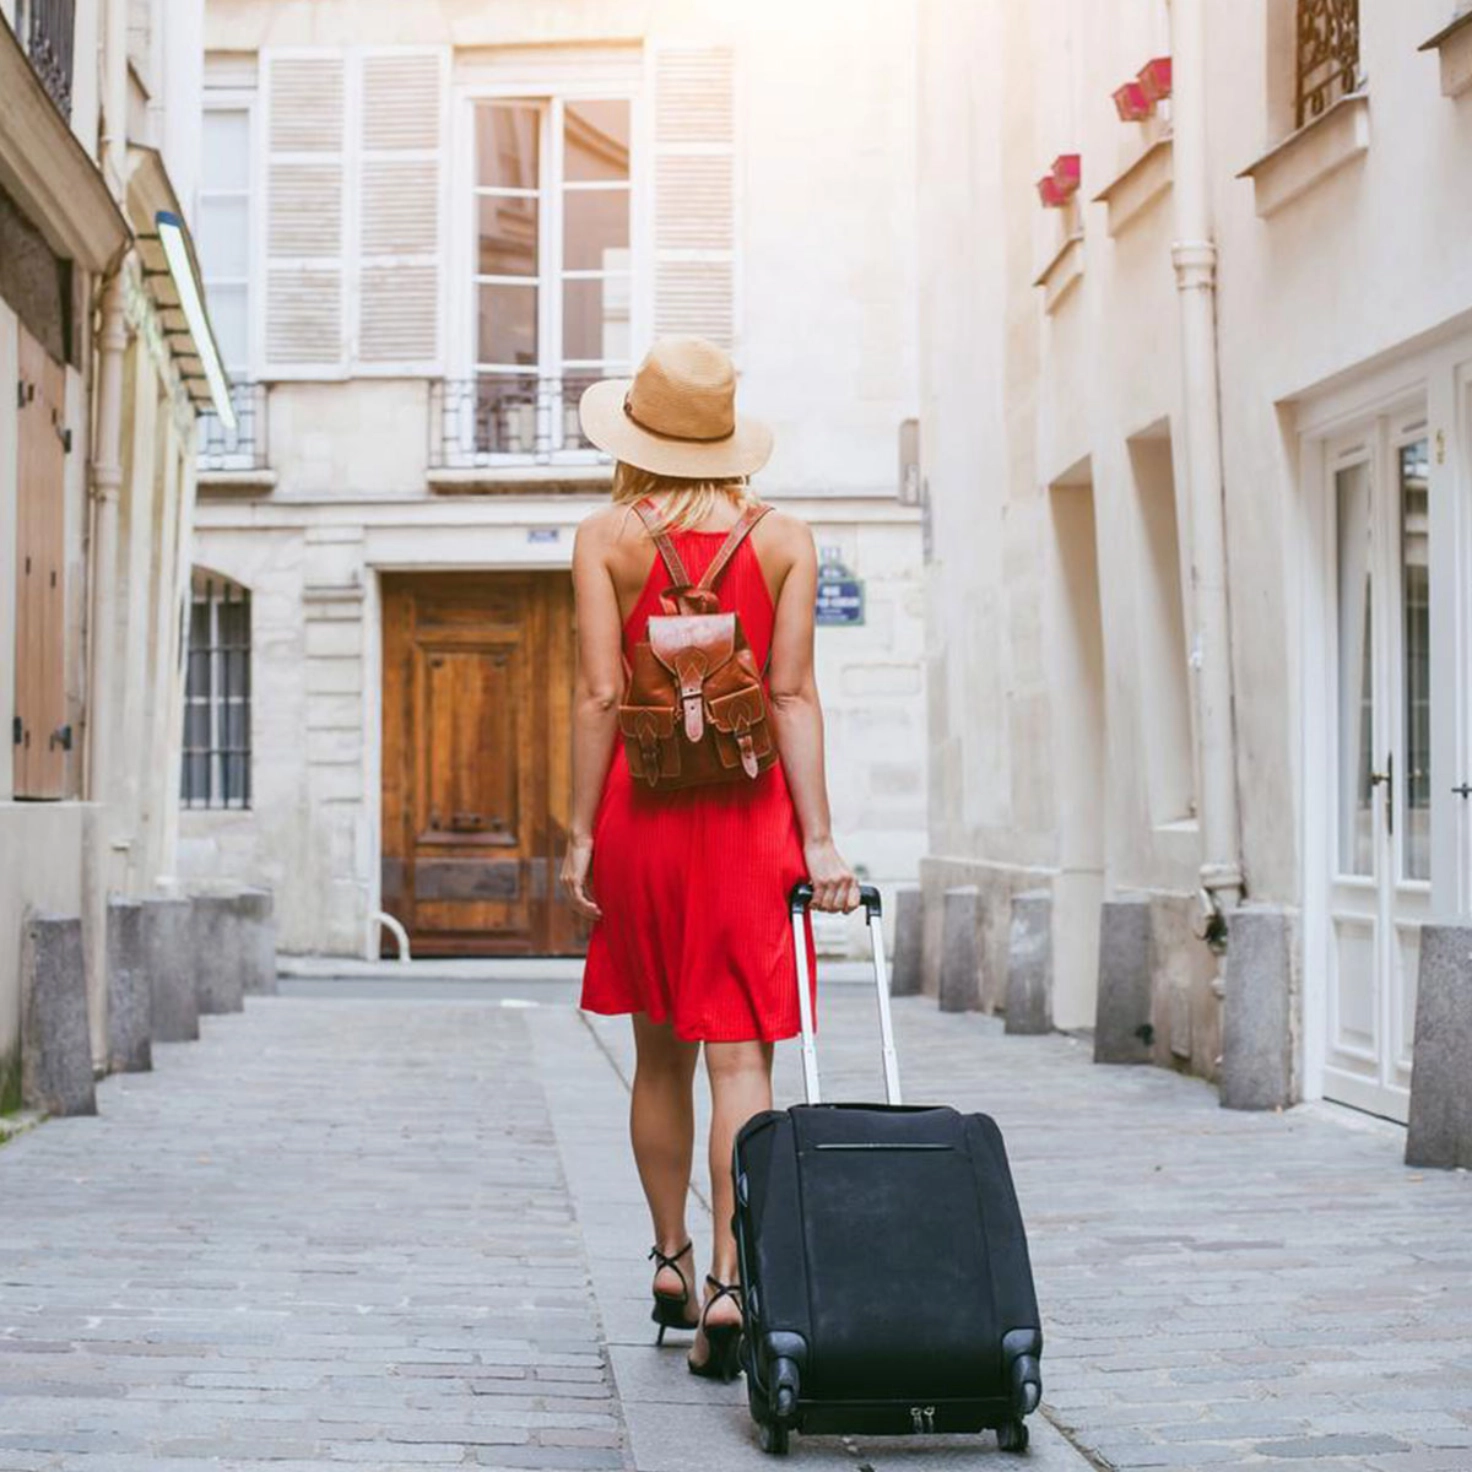 Une touriste se promène dans une ruelle étroite avec une valise à roulettes